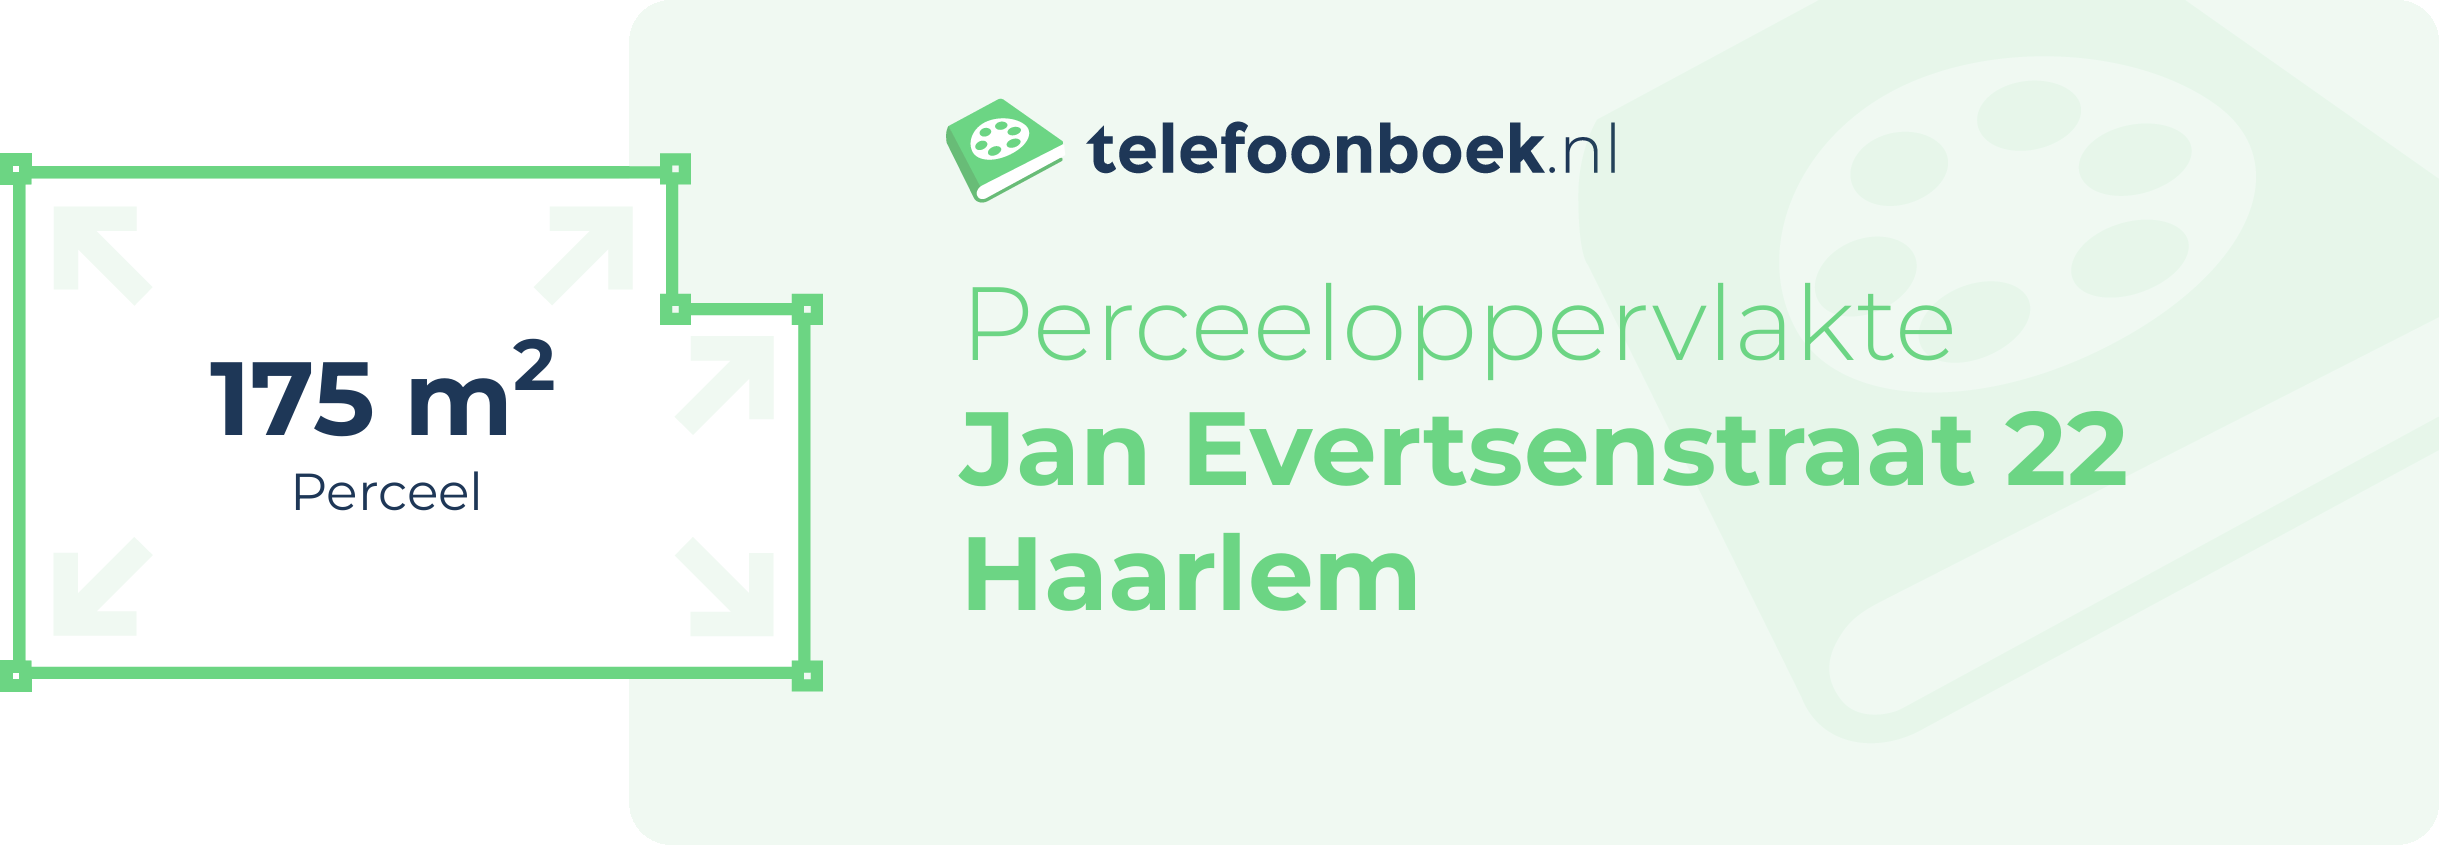 Perceeloppervlakte Jan Evertsenstraat 22 Haarlem